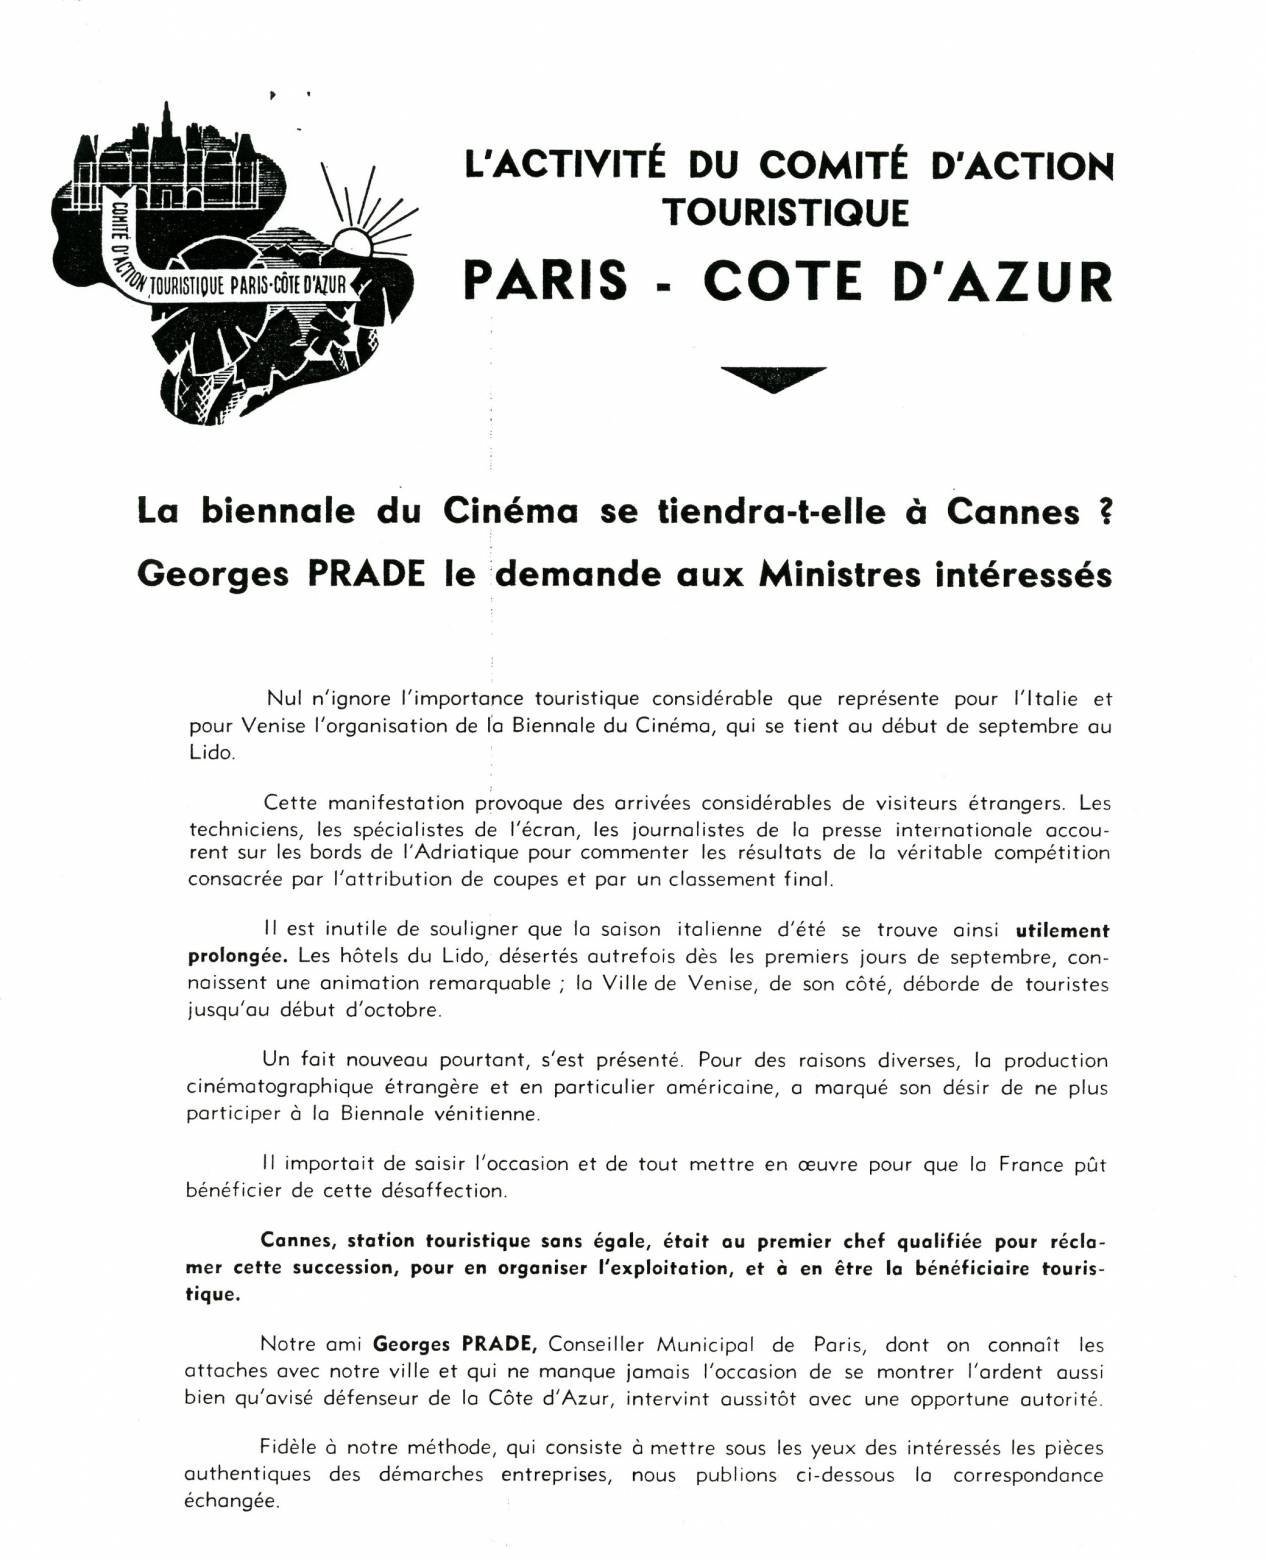 Correspondencia de Georges Prade